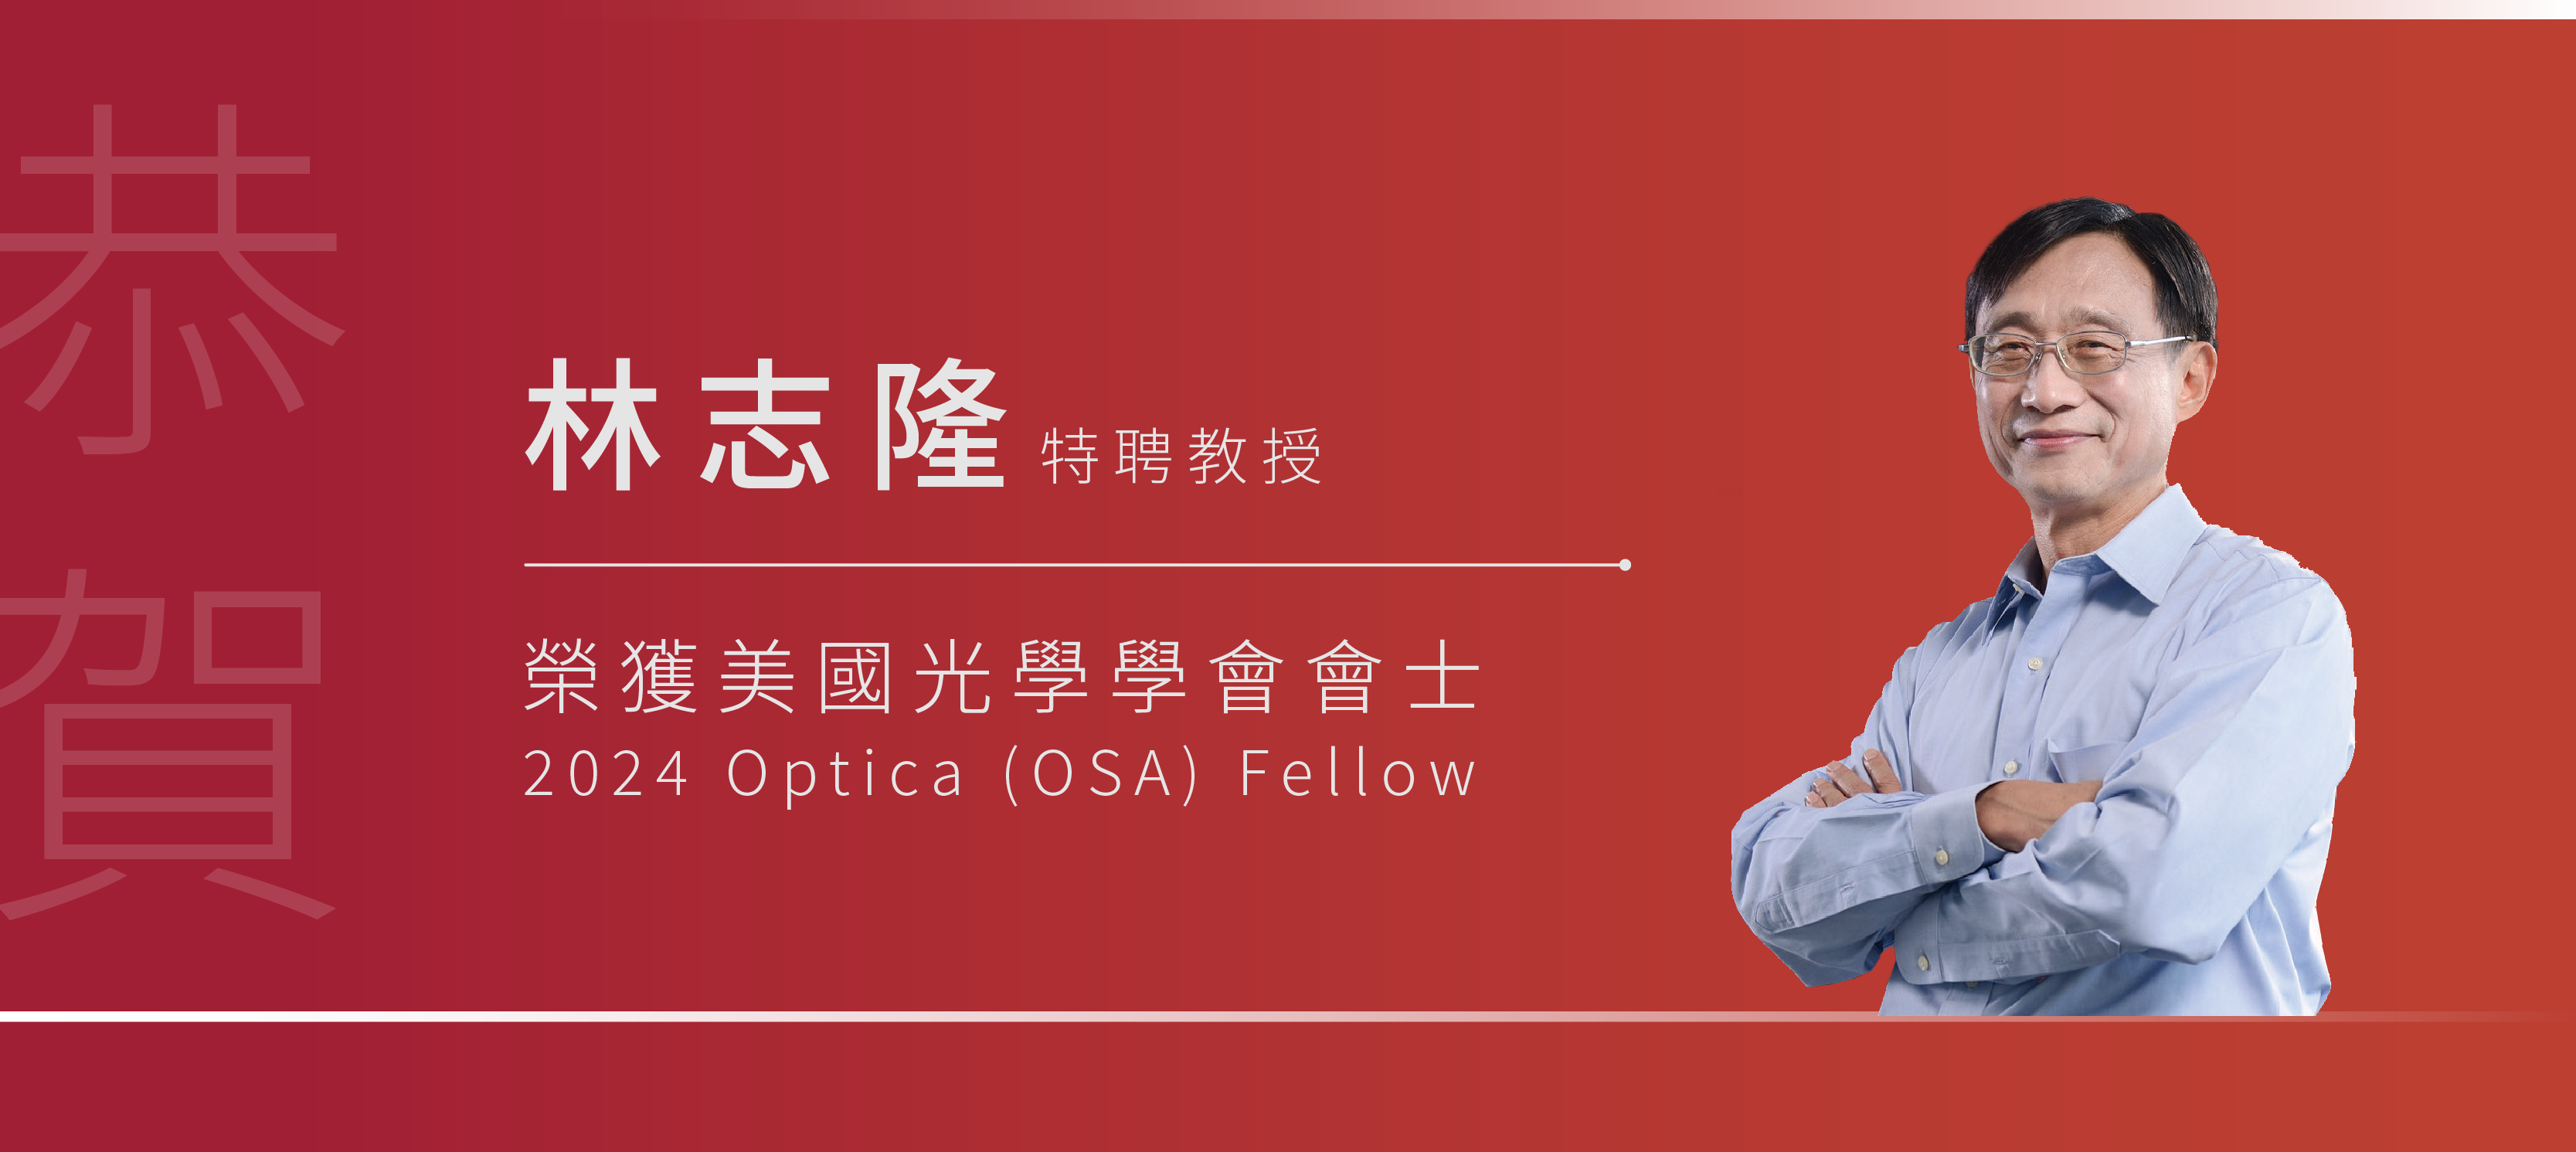 恭賀林志隆特聘教授榮獲美國光學學會會士(2024 Optica (OSA) Fellow)